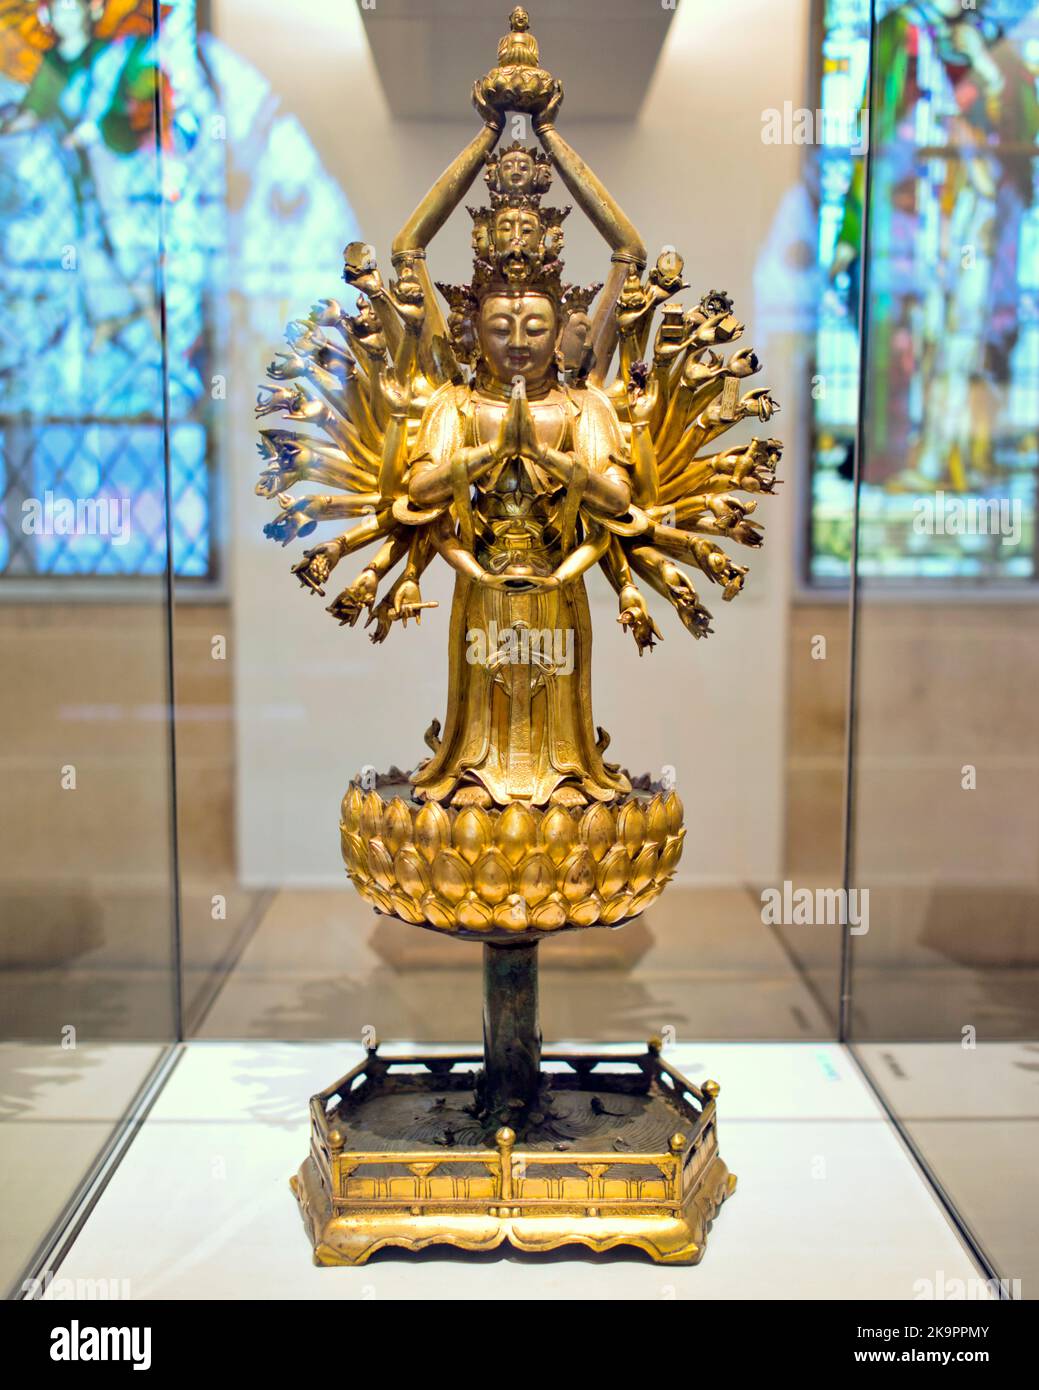 St. Mungo Museum of Religious Life & Art Buddhismus Avalokiteshvara wird insbesondere in Tibet praktiziert und wird oft als mit vielen Köpfen und Armen dargestellt Stockfoto